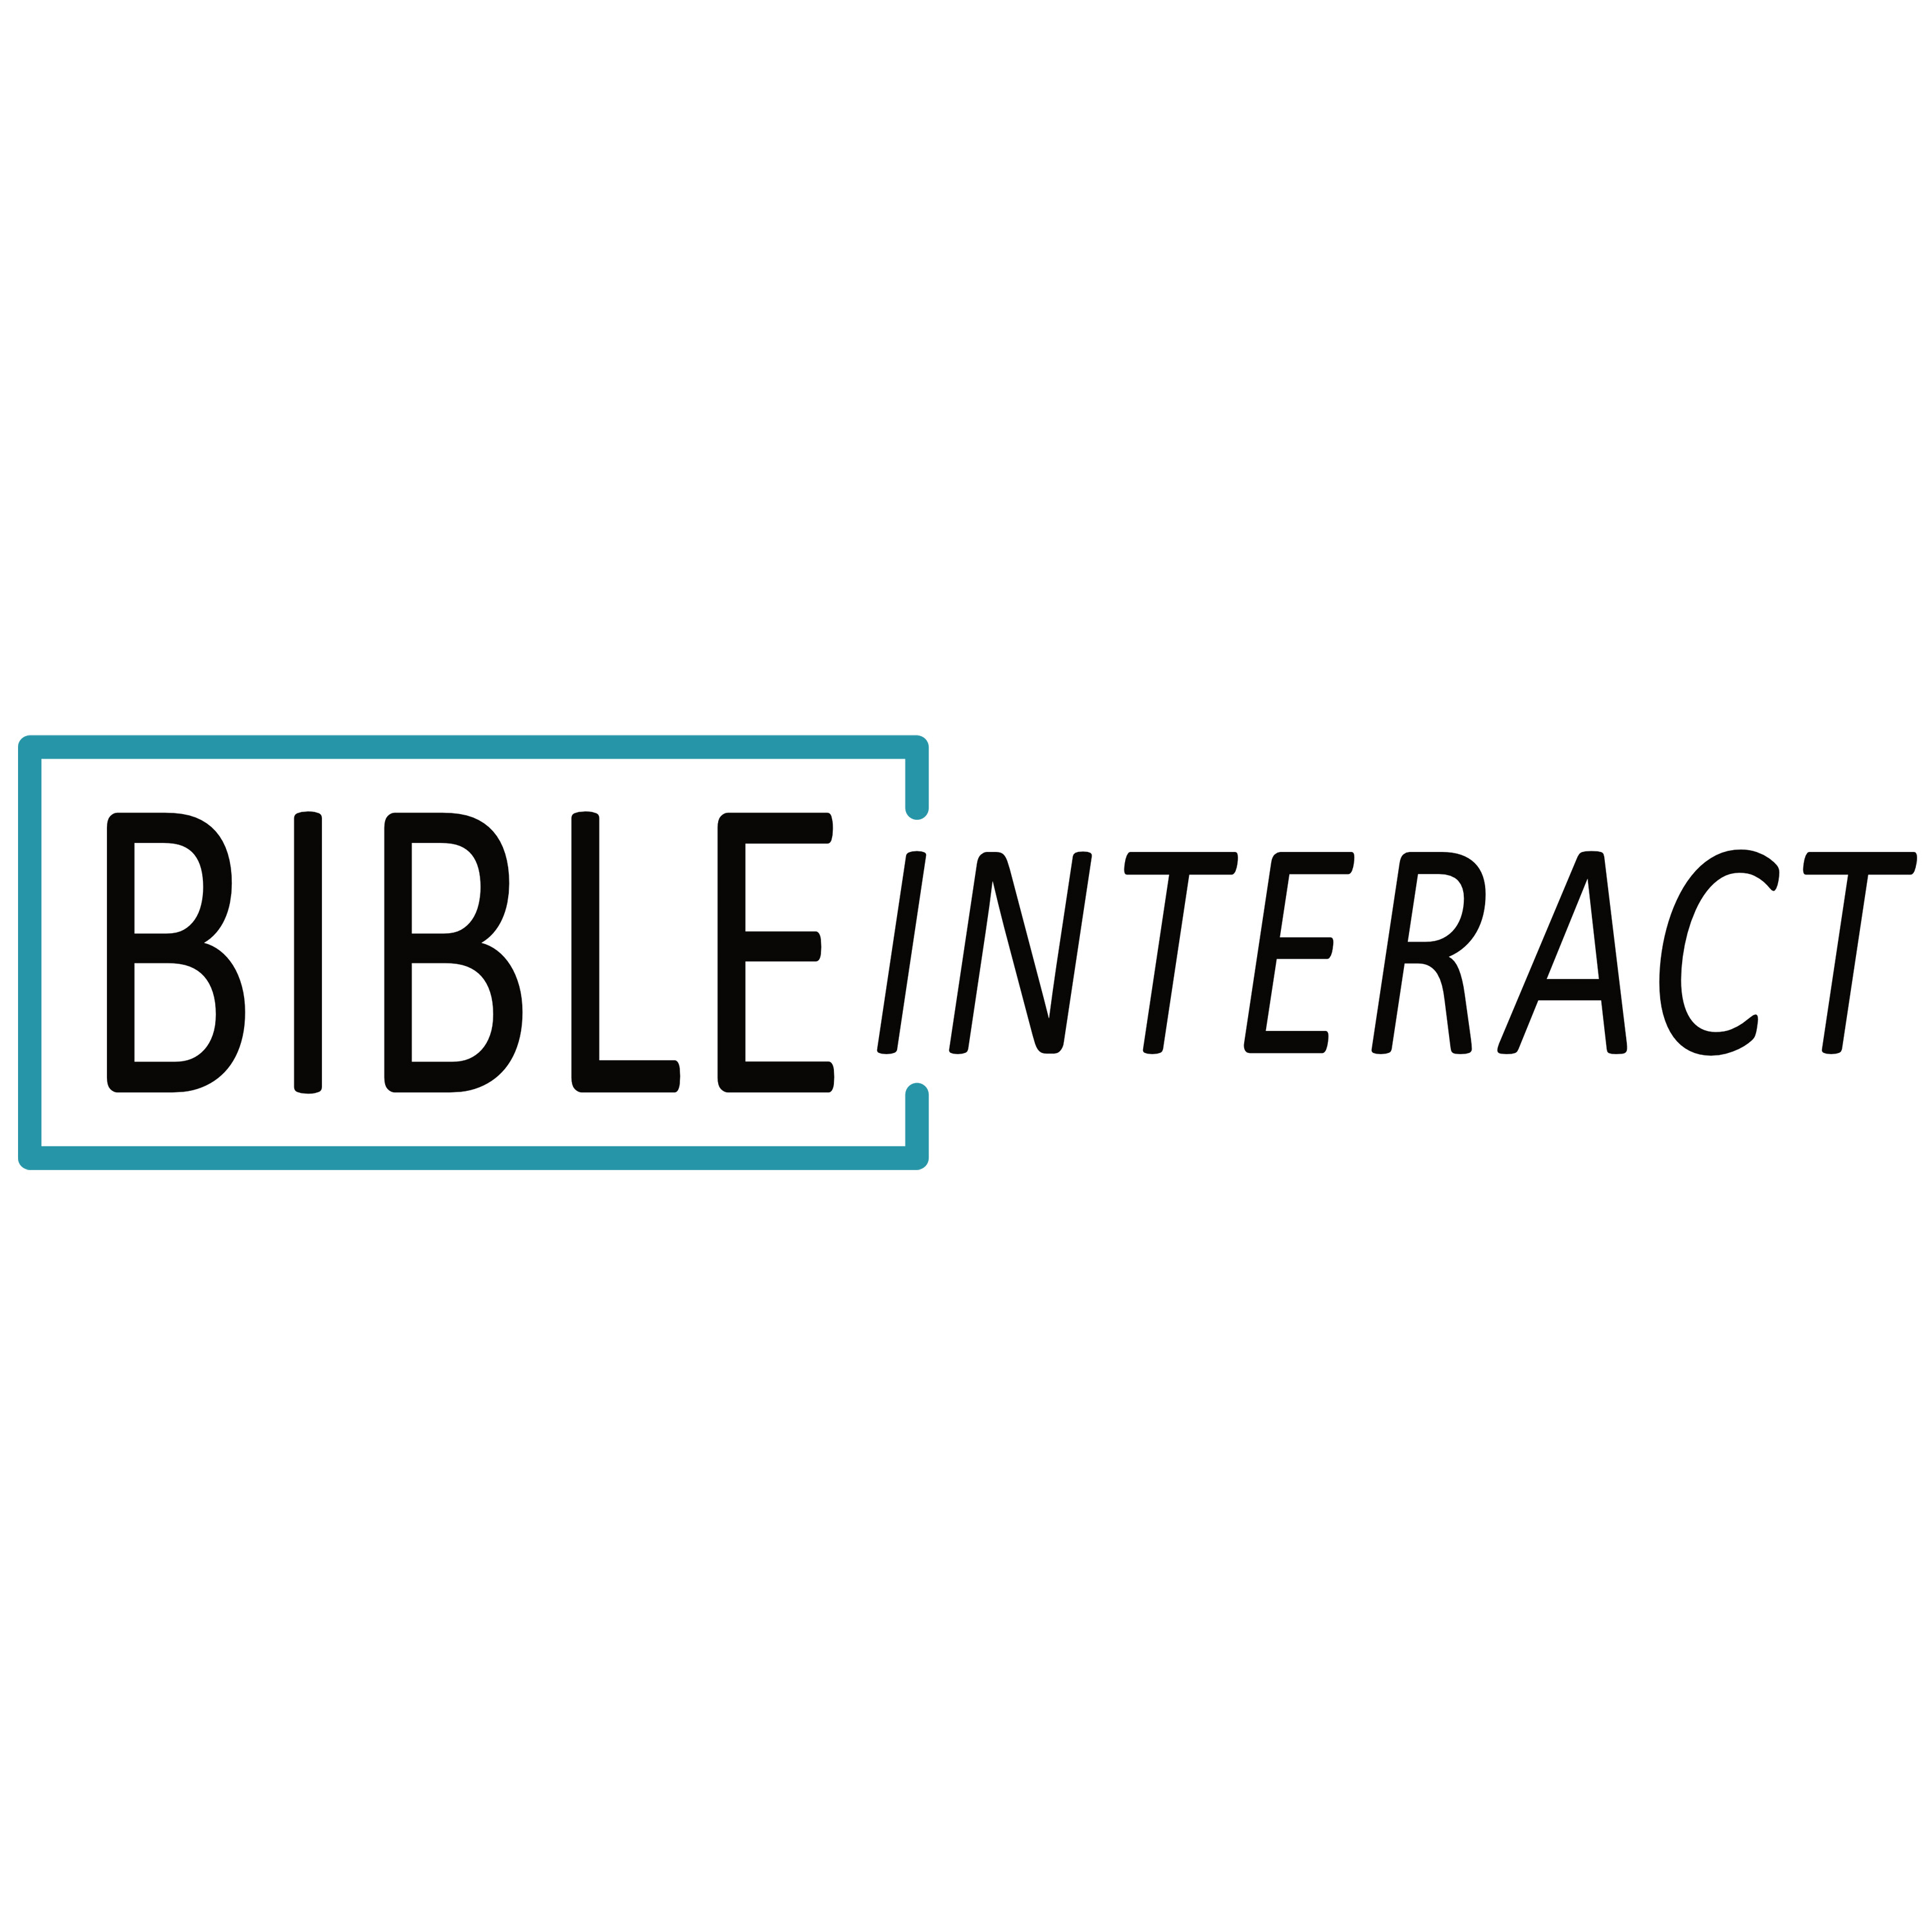 BibleInteract